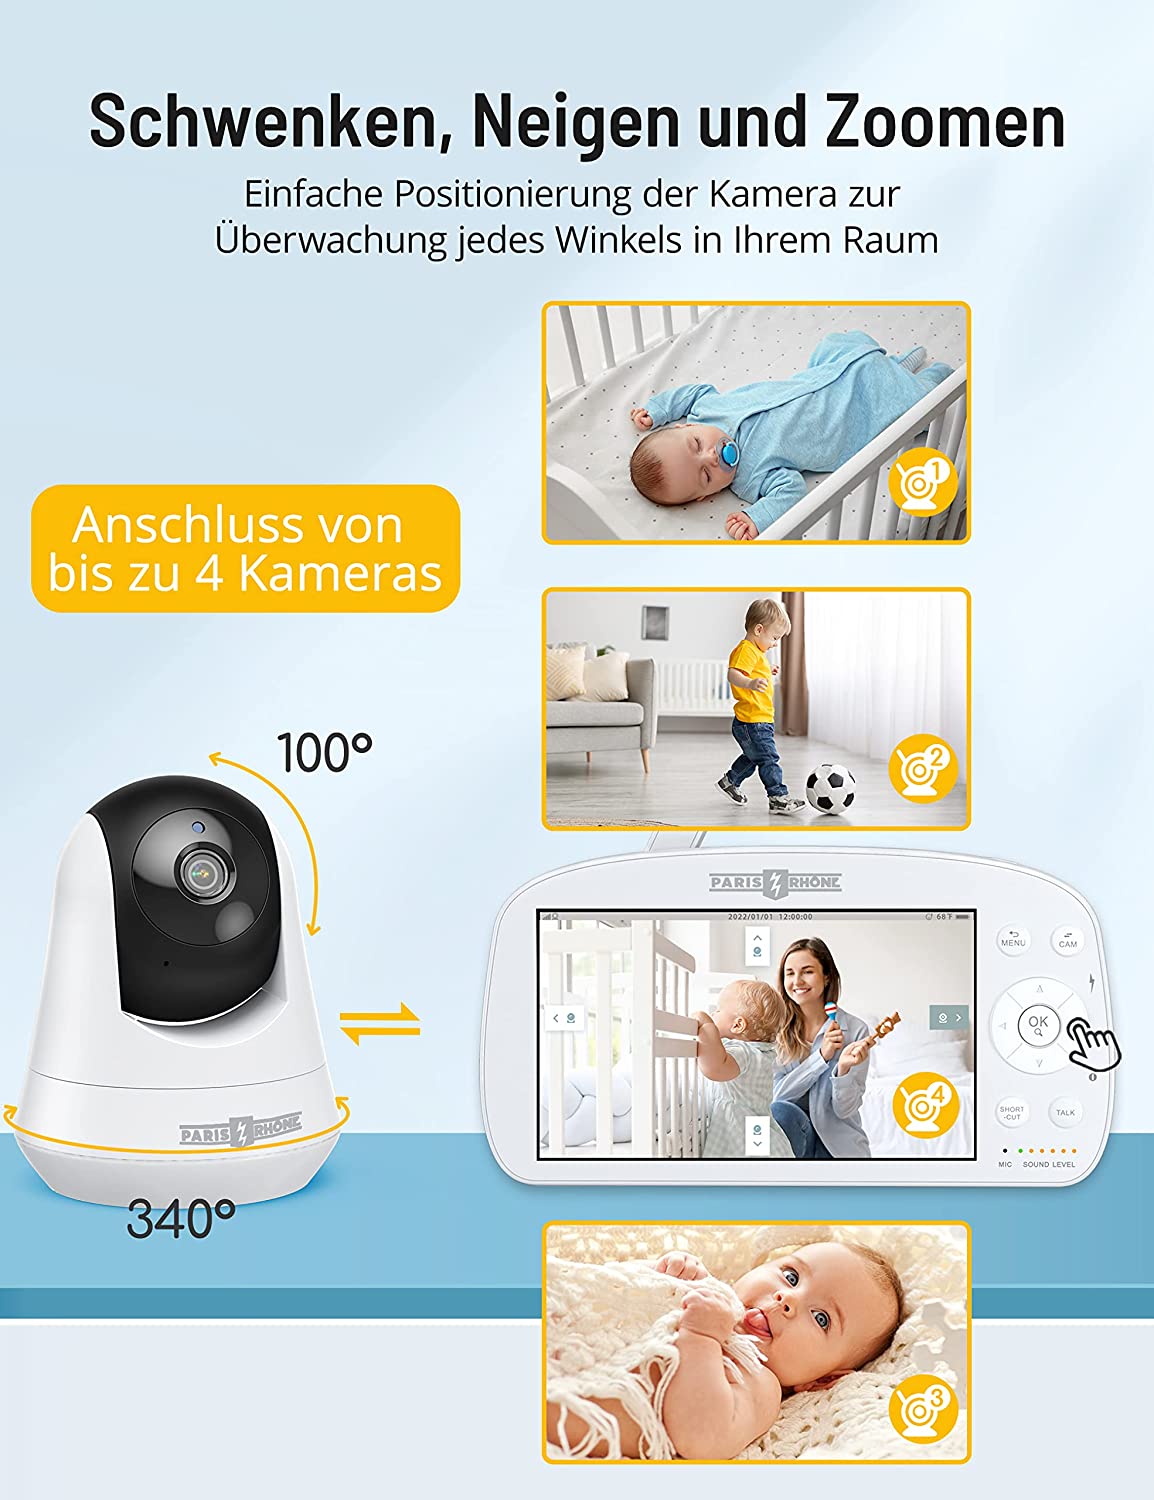 PARIS RHÔNE IH004 Babyphone mit Kamera 1080P, 5.5 Zoll großes Display Video Baby Monitor 2024